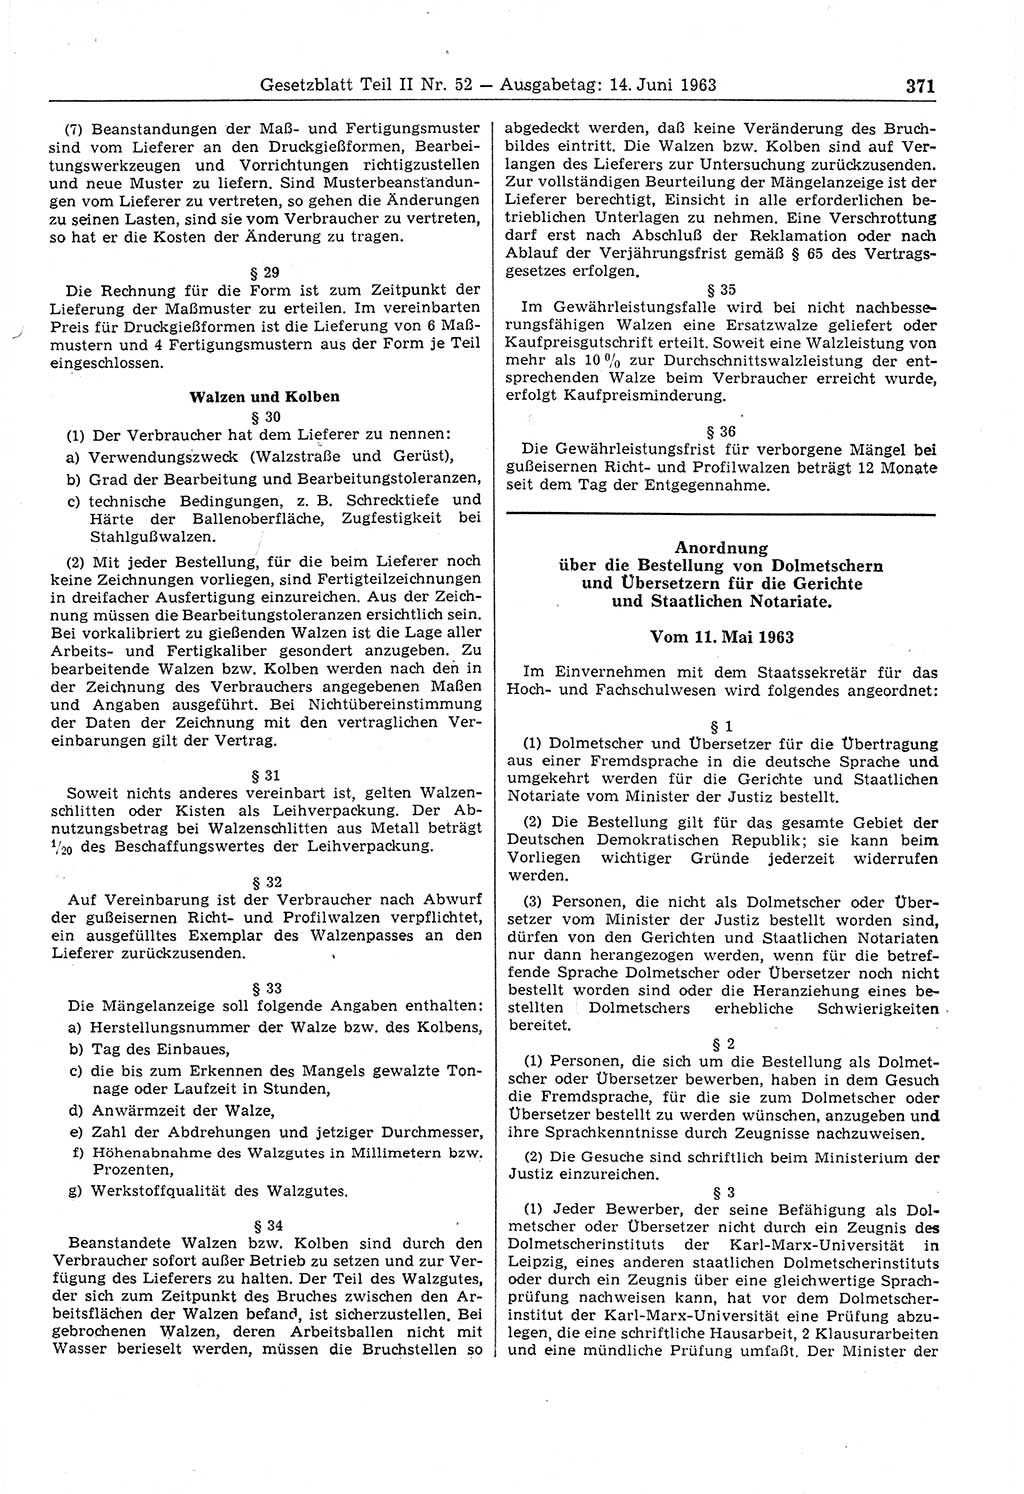 Gesetzblatt (GBl.) der Deutschen Demokratischen Republik (DDR) Teil ⅠⅠ 1963, Seite 371 (GBl. DDR ⅠⅠ 1963, S. 371)